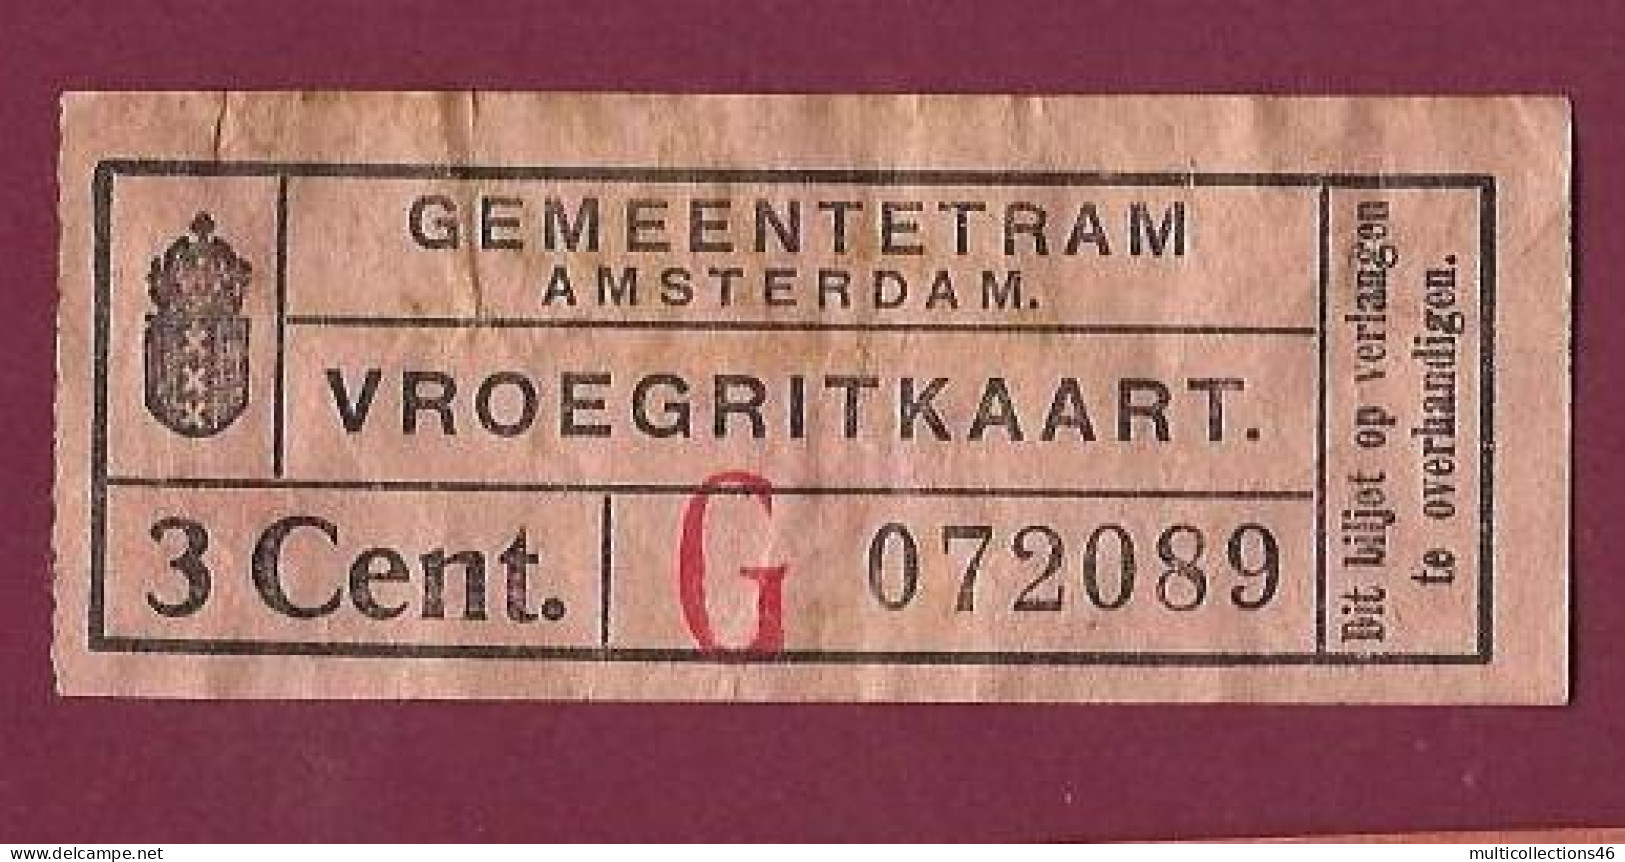 301223 - TICKET CHEMIN DE FER TRAM METRO - PAYS BAS HOLLANDE GEMEENTETRAM AMSTERDAM G 3 Cent. 072089 - Europe